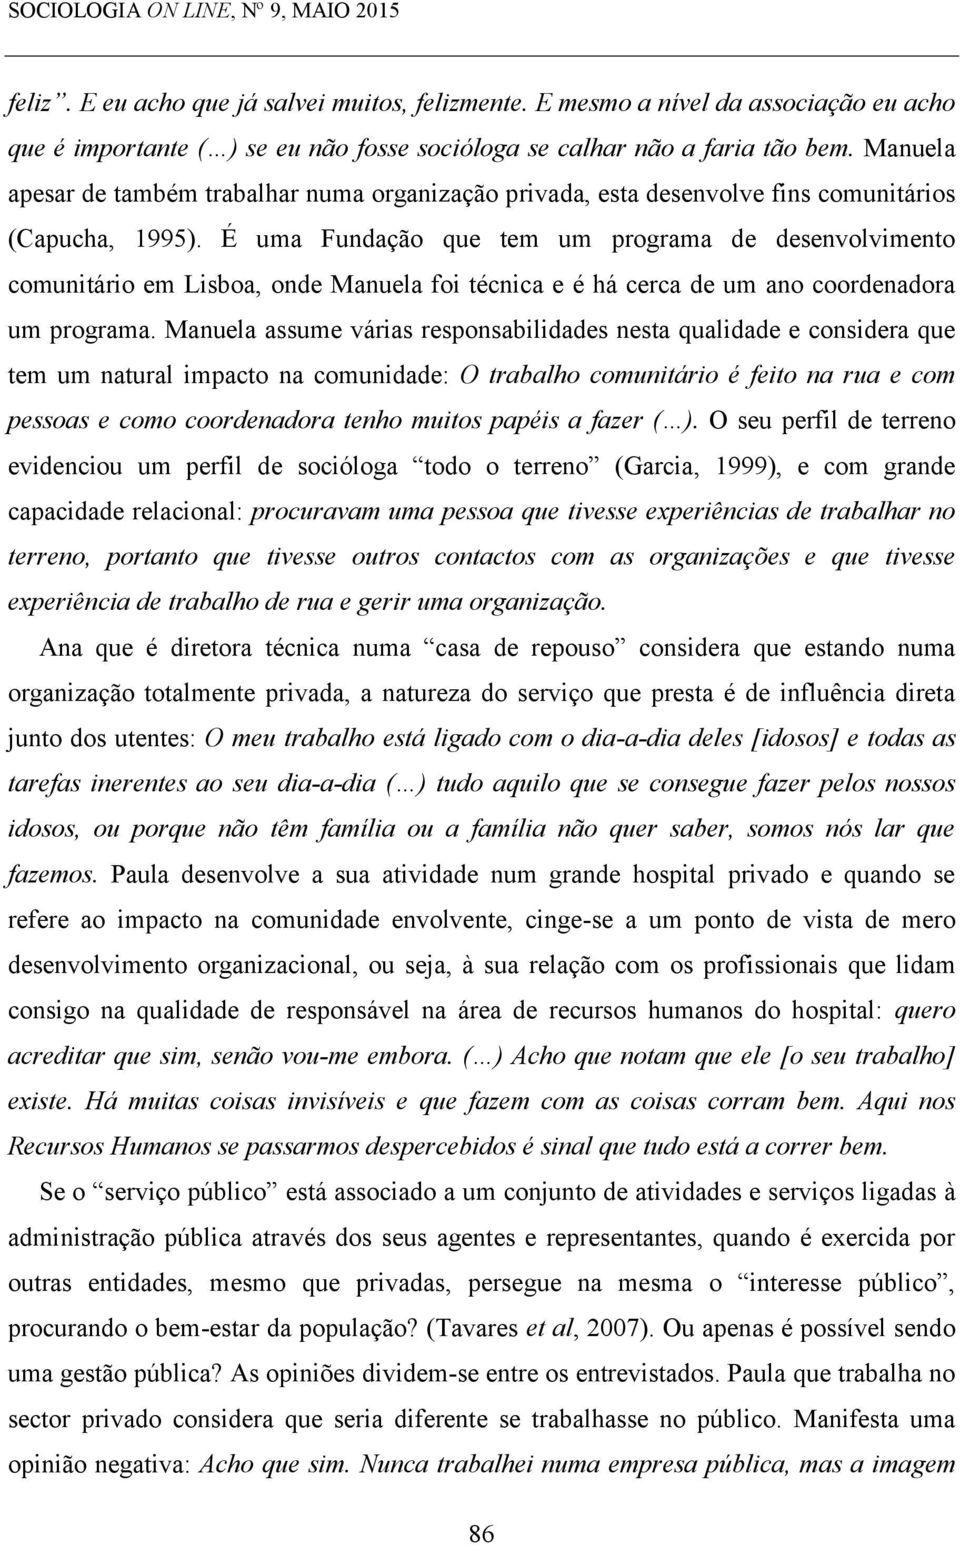 Manuela apesar de também trabalhar numa organização privada, esta desenvolve fins comunitários (Capucha, 1995).